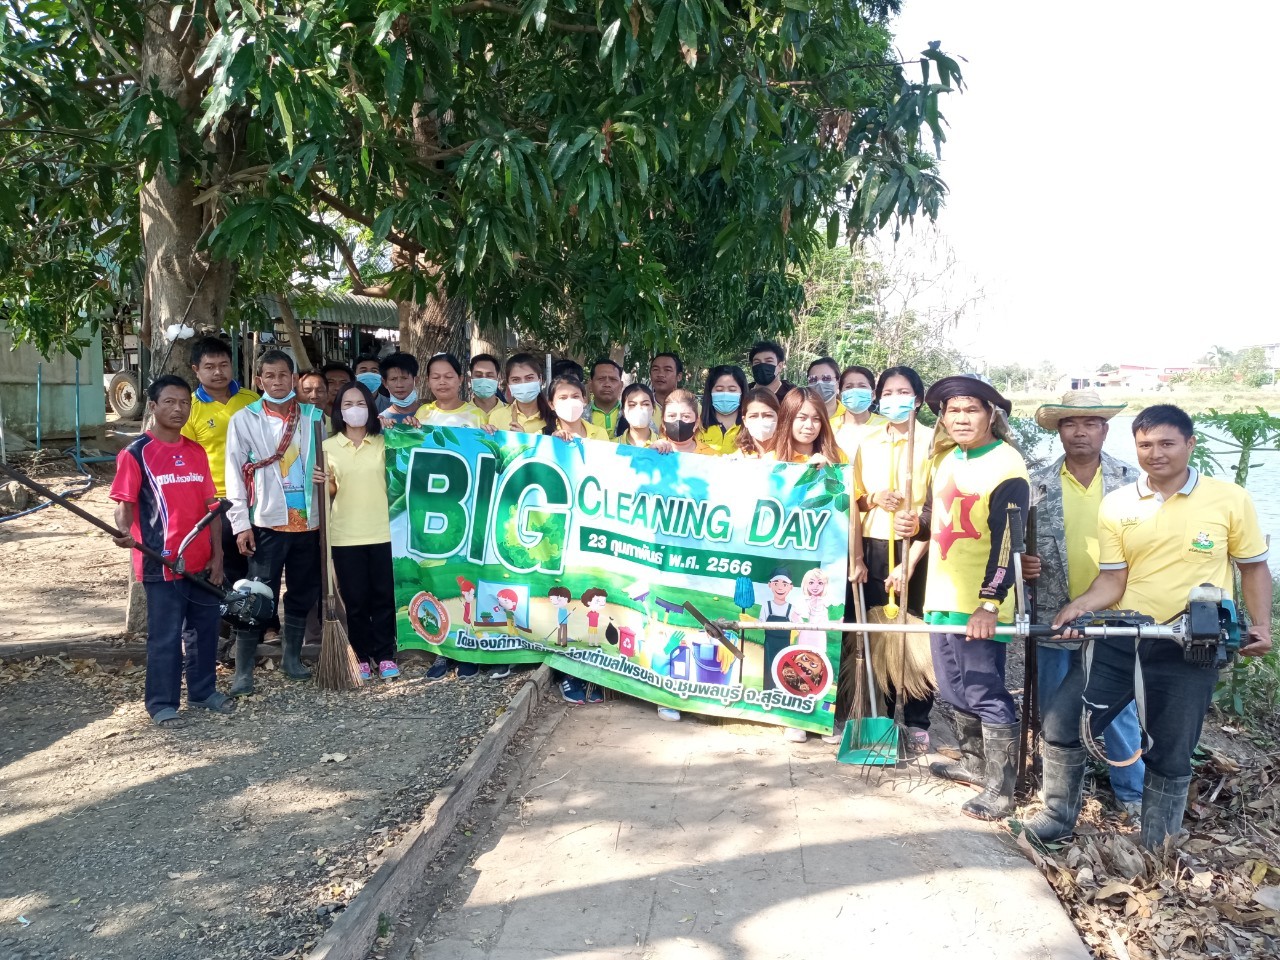 วันที่ 23 กุมภาพันธ์ 2566 องค์การบริหารส่วนตำบลไพรขลา กิจกรรม Big Cleaning day  องค์การบริหารส่วนตำบลไพรขลา